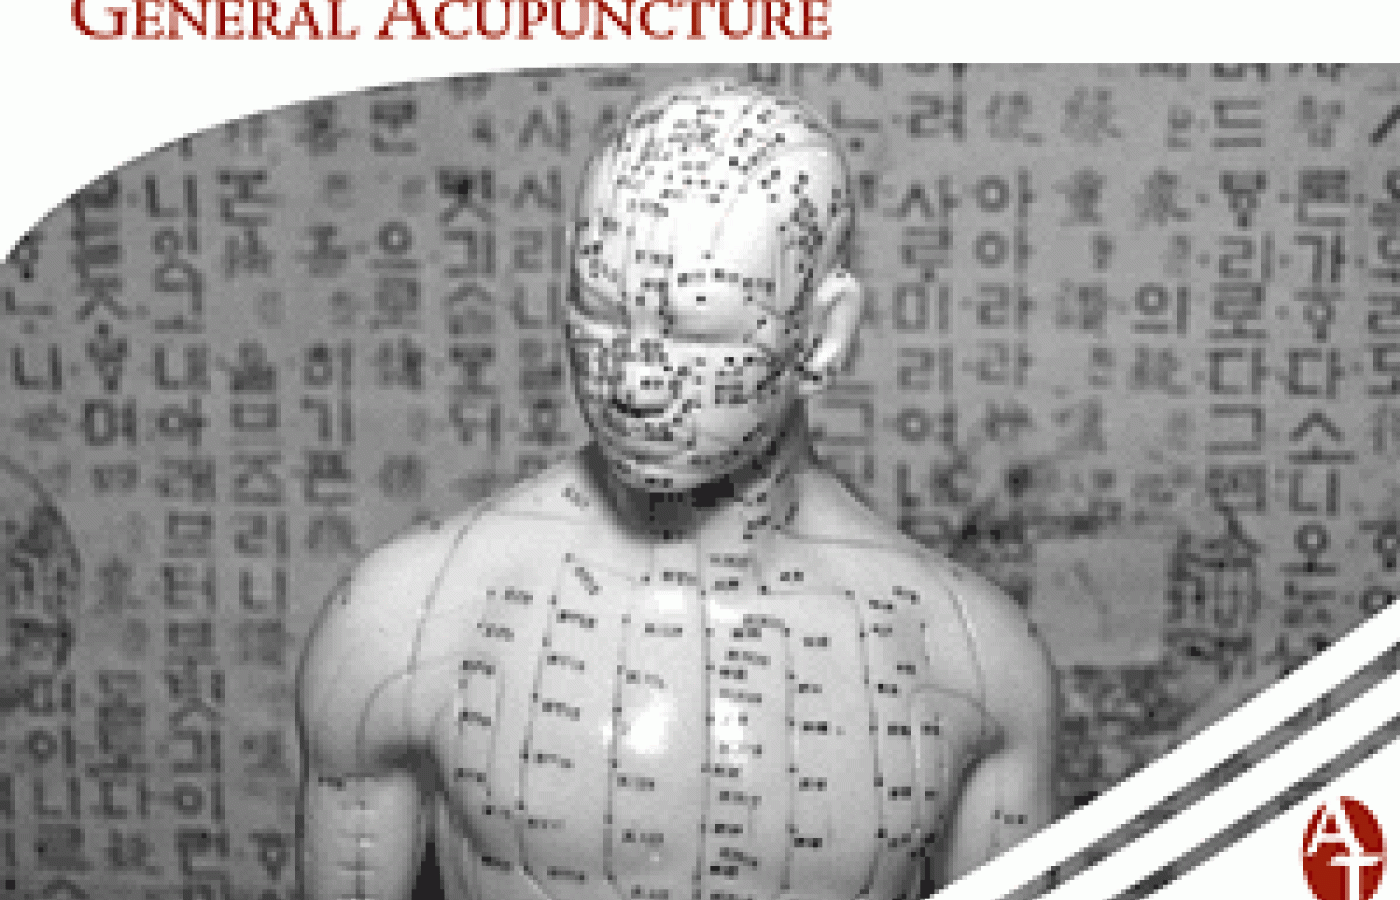 General Acupuncture